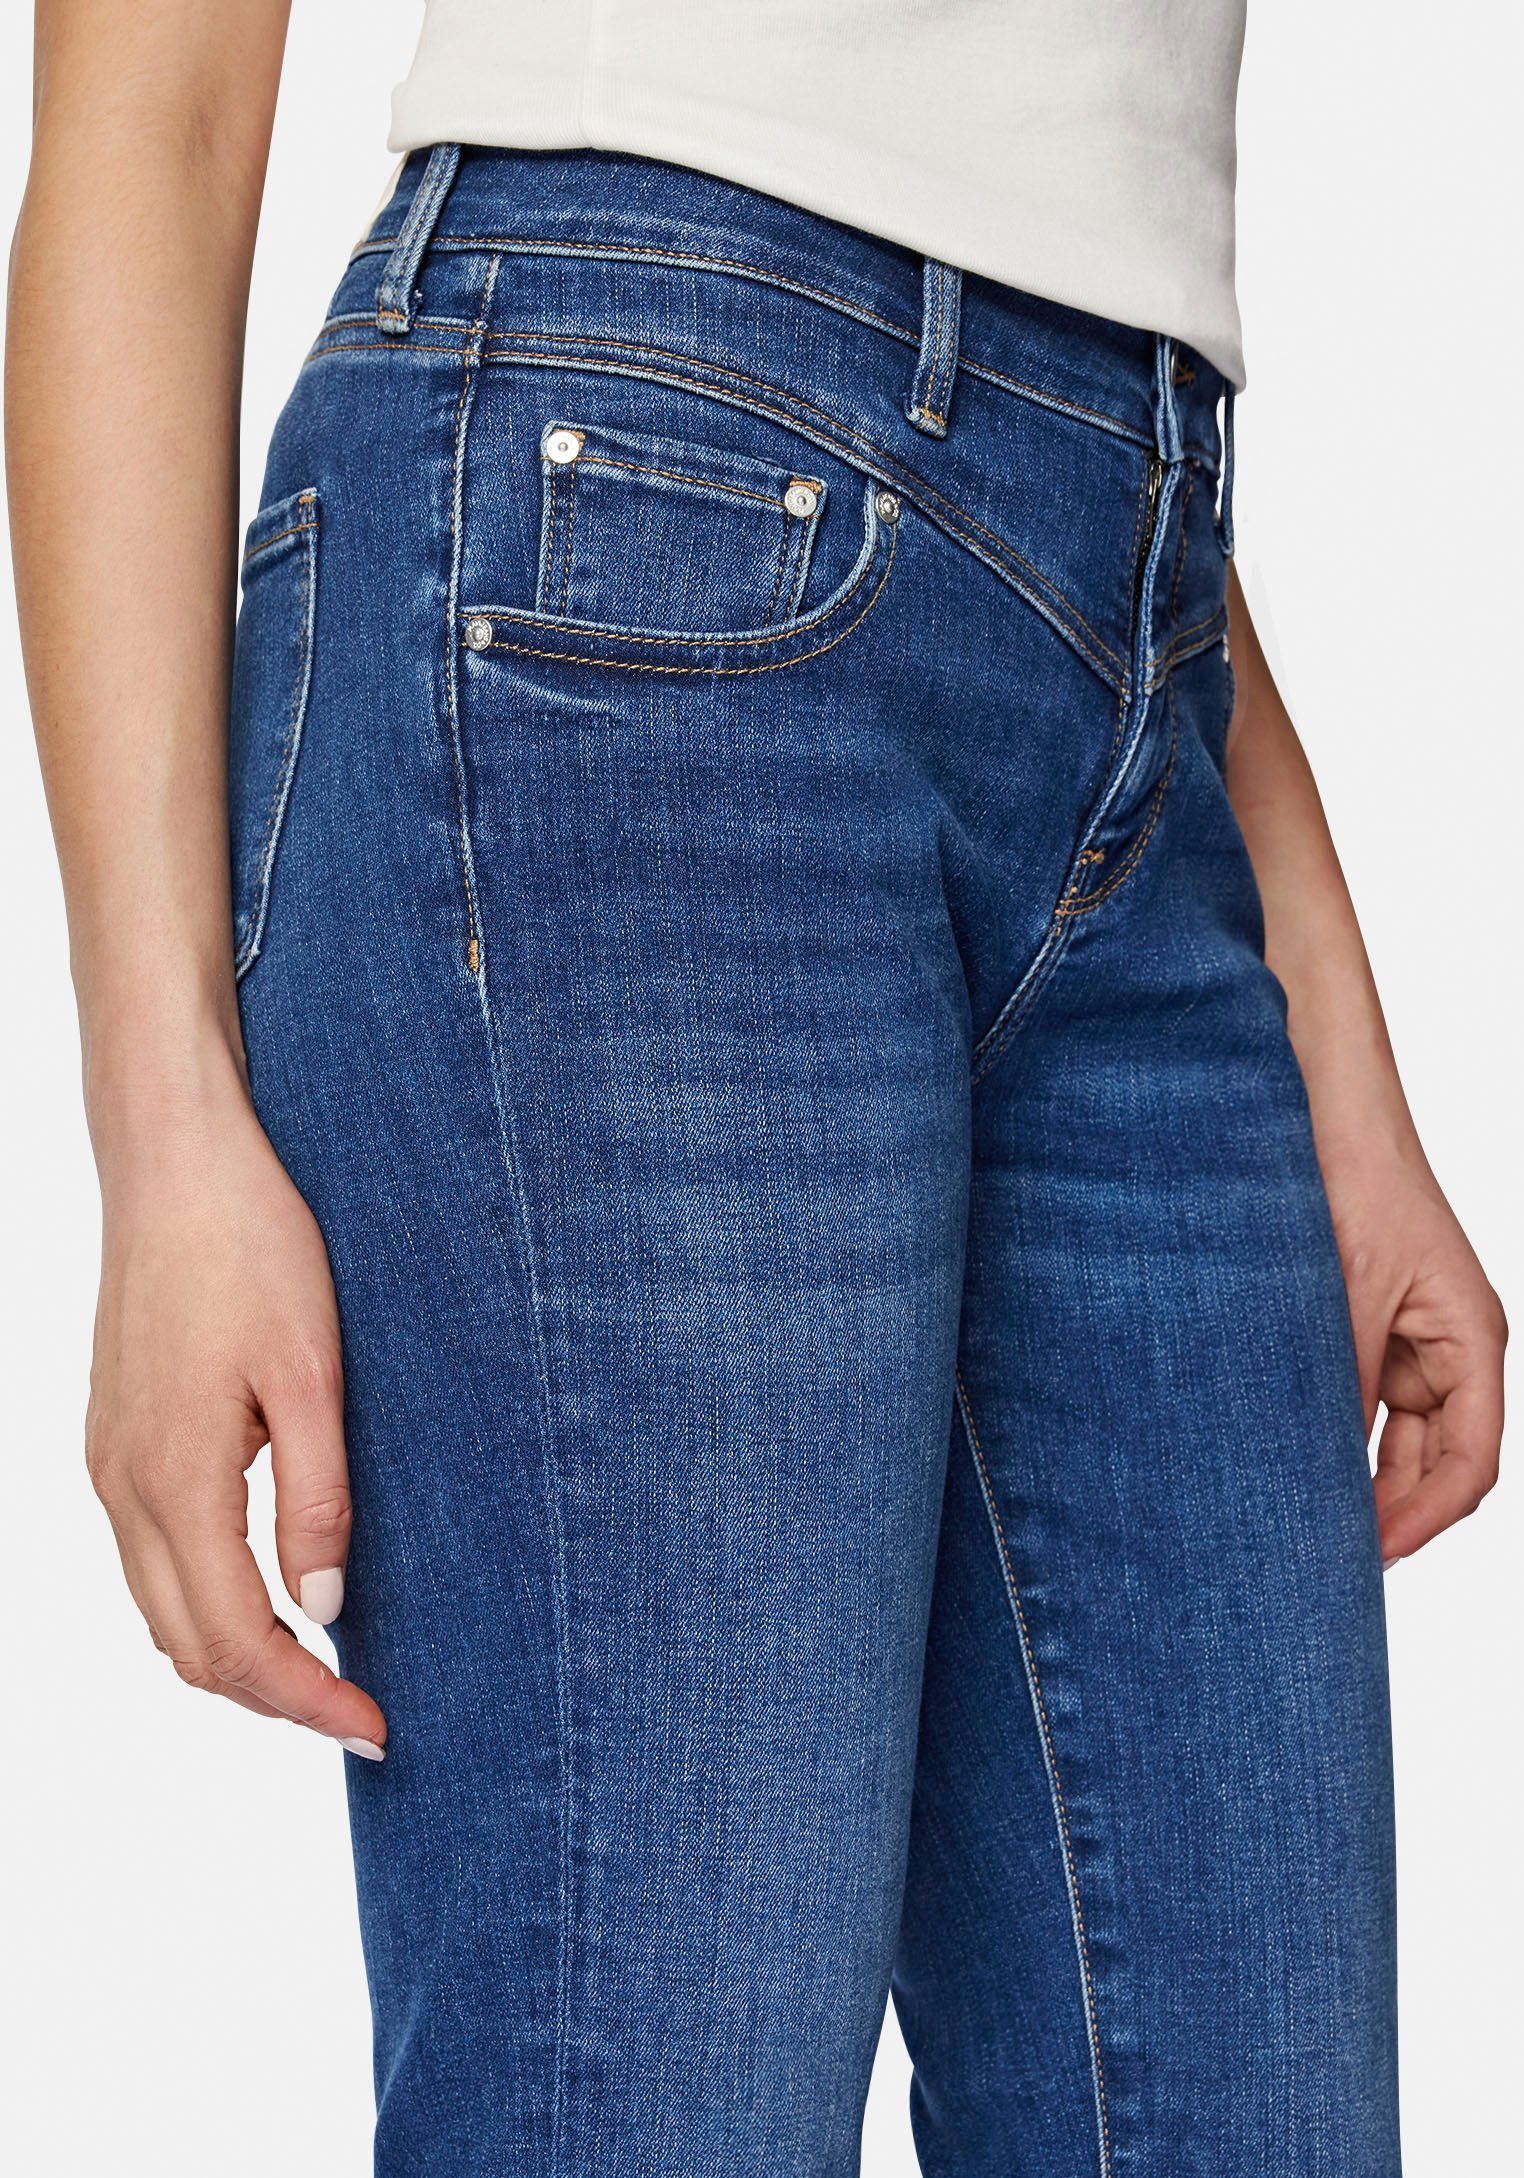 Mavi Slim-fit-Jeans trageangenehmer hochwertiger shaded dank (mid Stretchdenim blue mid blue) Verarbeitung